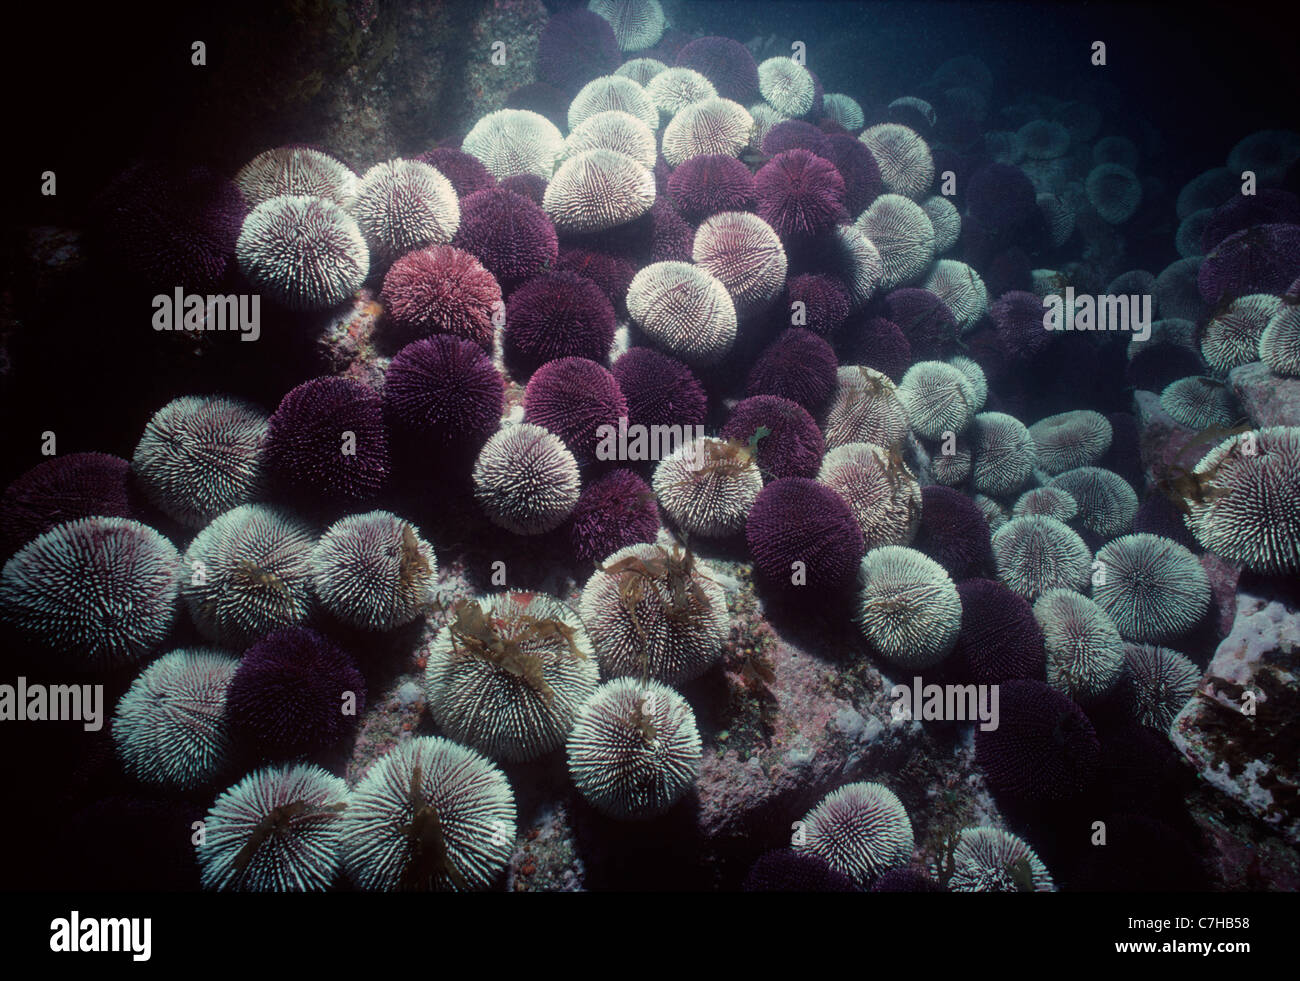 Colonia di ricci di mare (Echinus esculentus) pascolano e si nutrono di alghe. Ile d' Ouessant Brittany, Francia - Oceano Atlantico Foto Stock